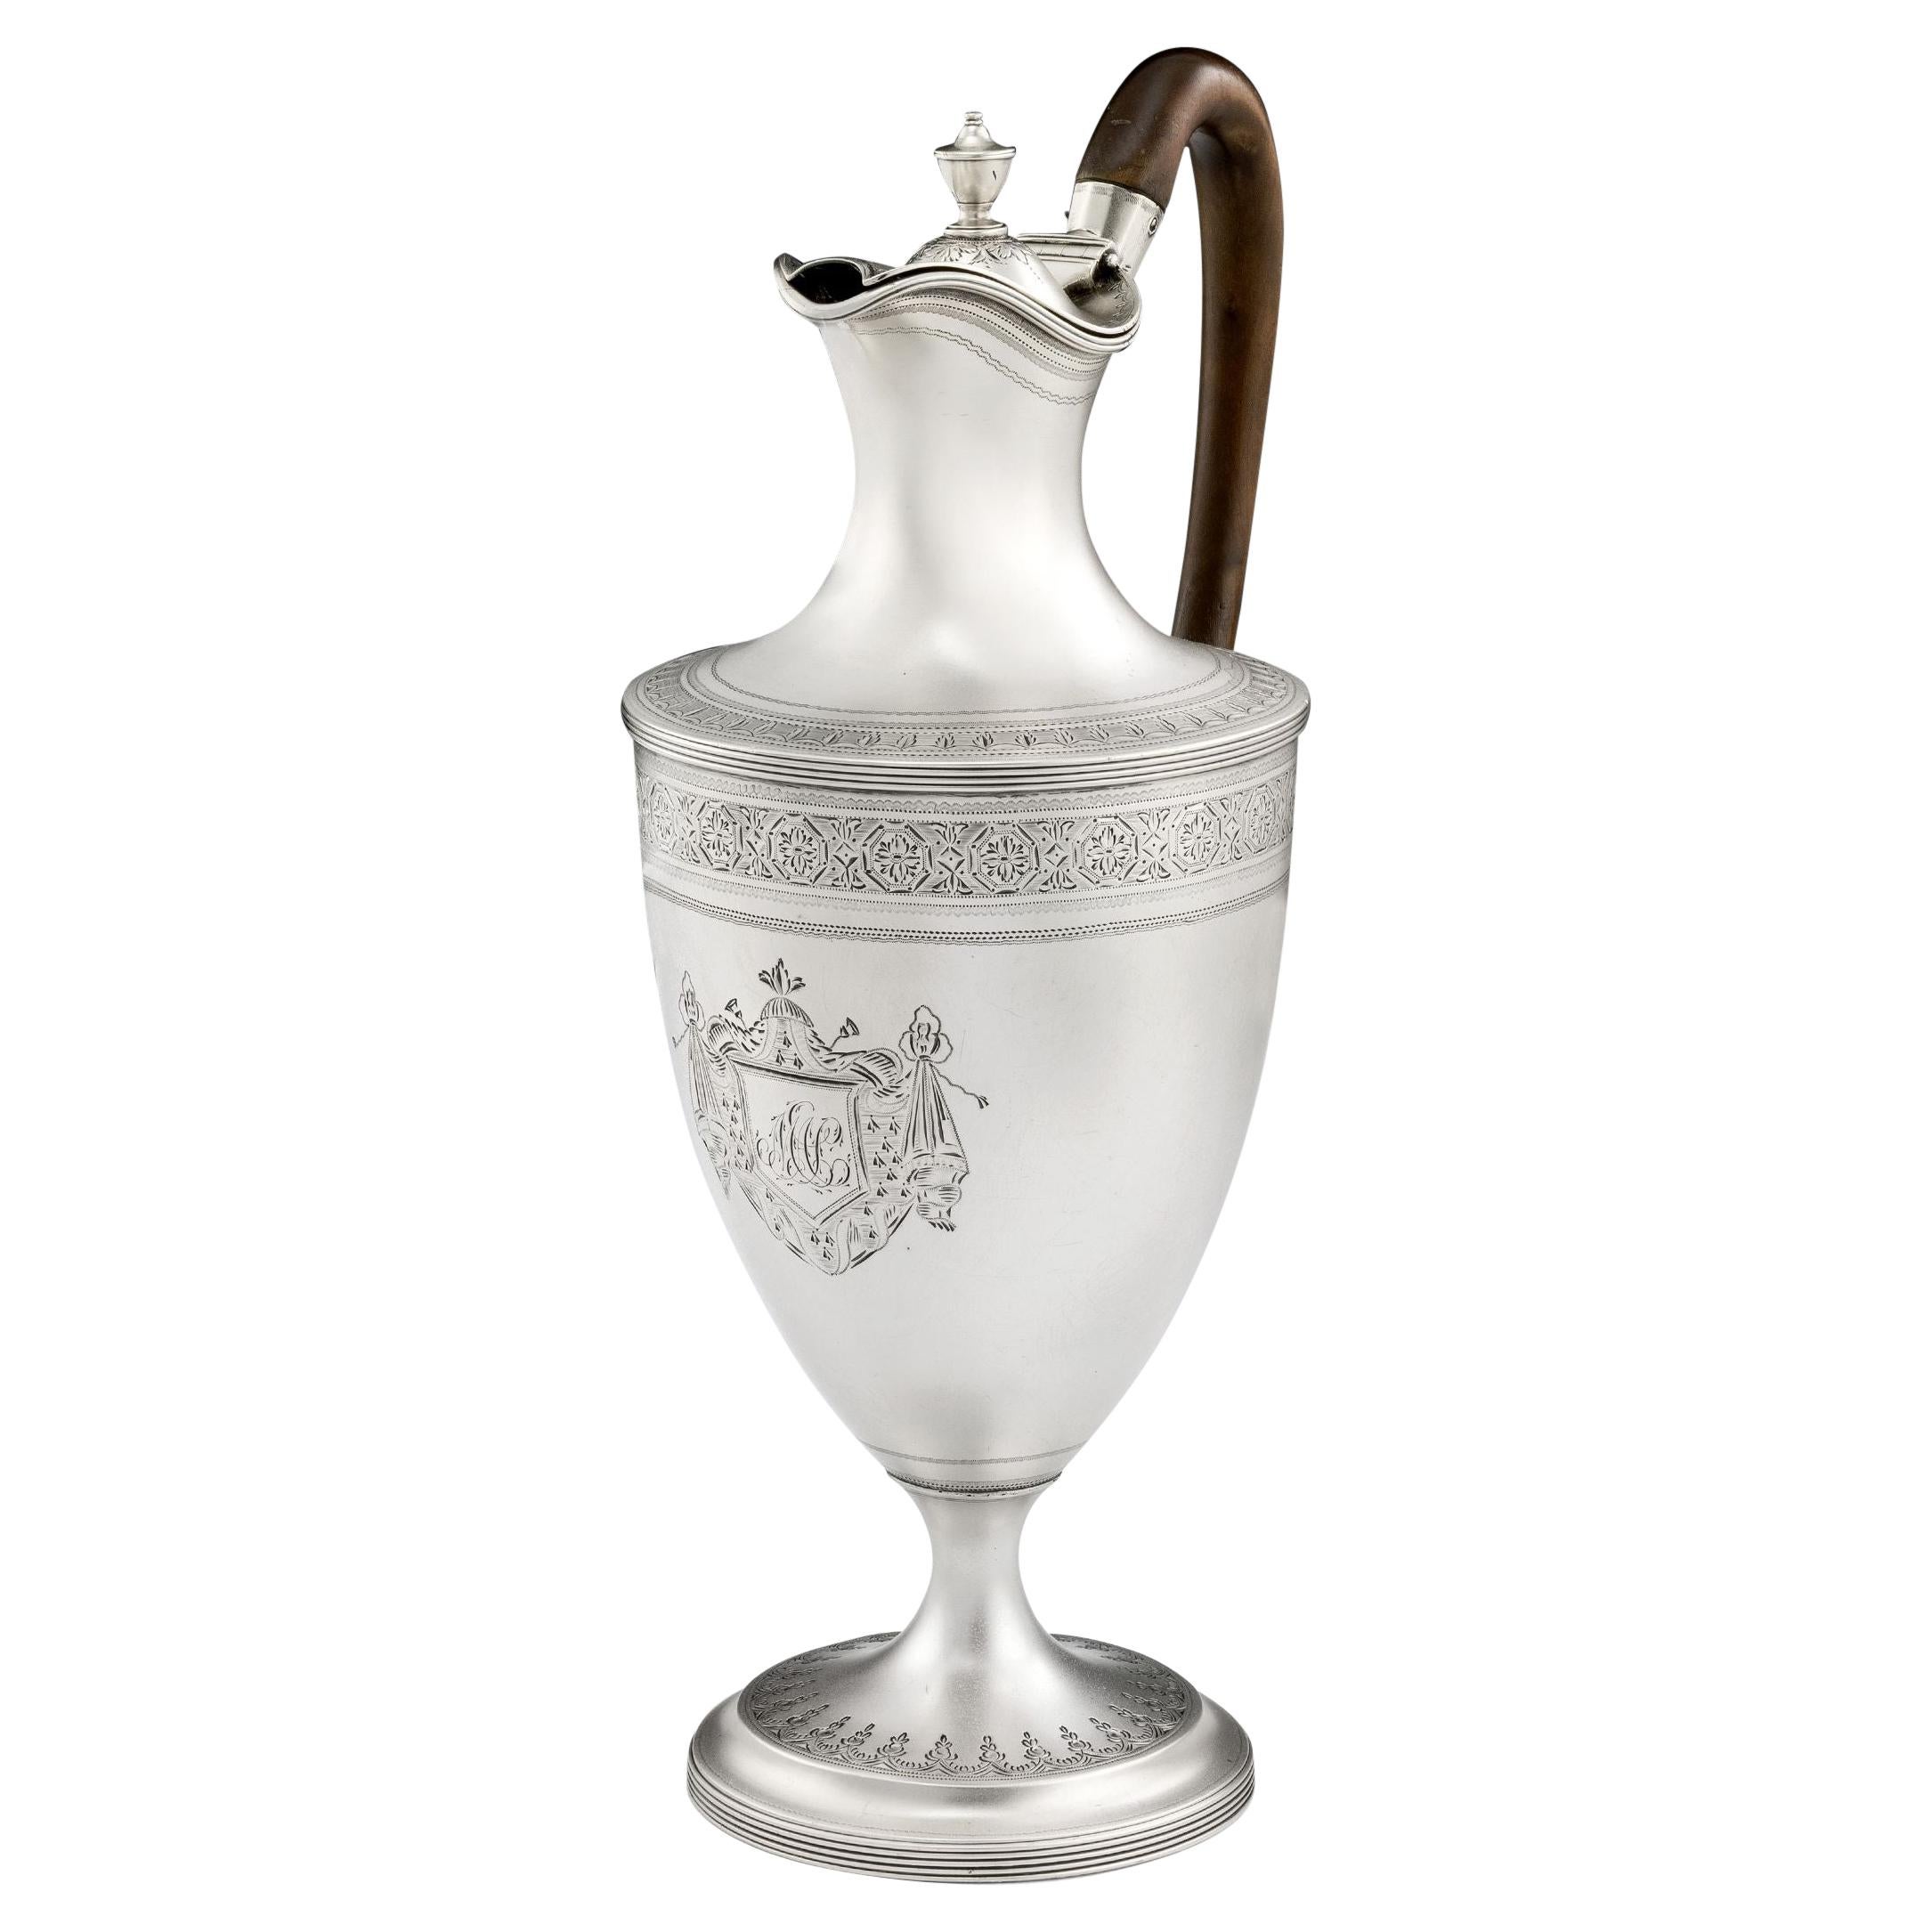 Klassische Wasser-/Wine-Kanne von George III., hergestellt 1791 in London von John Robins